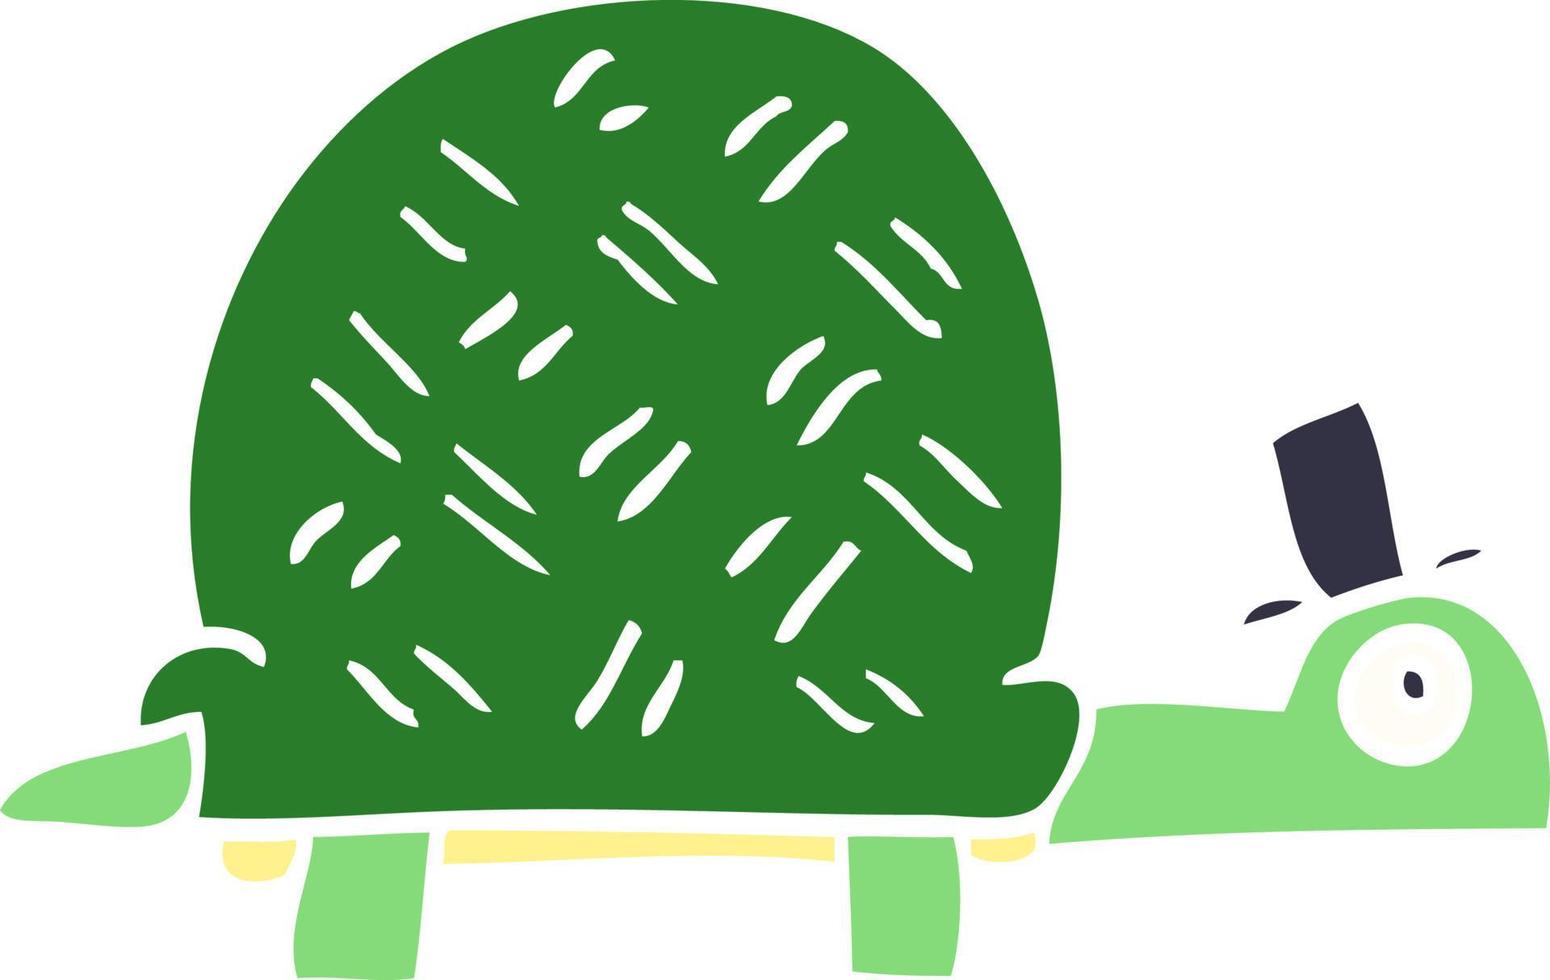 tartaruga engraçada do doodle dos desenhos animados vetor